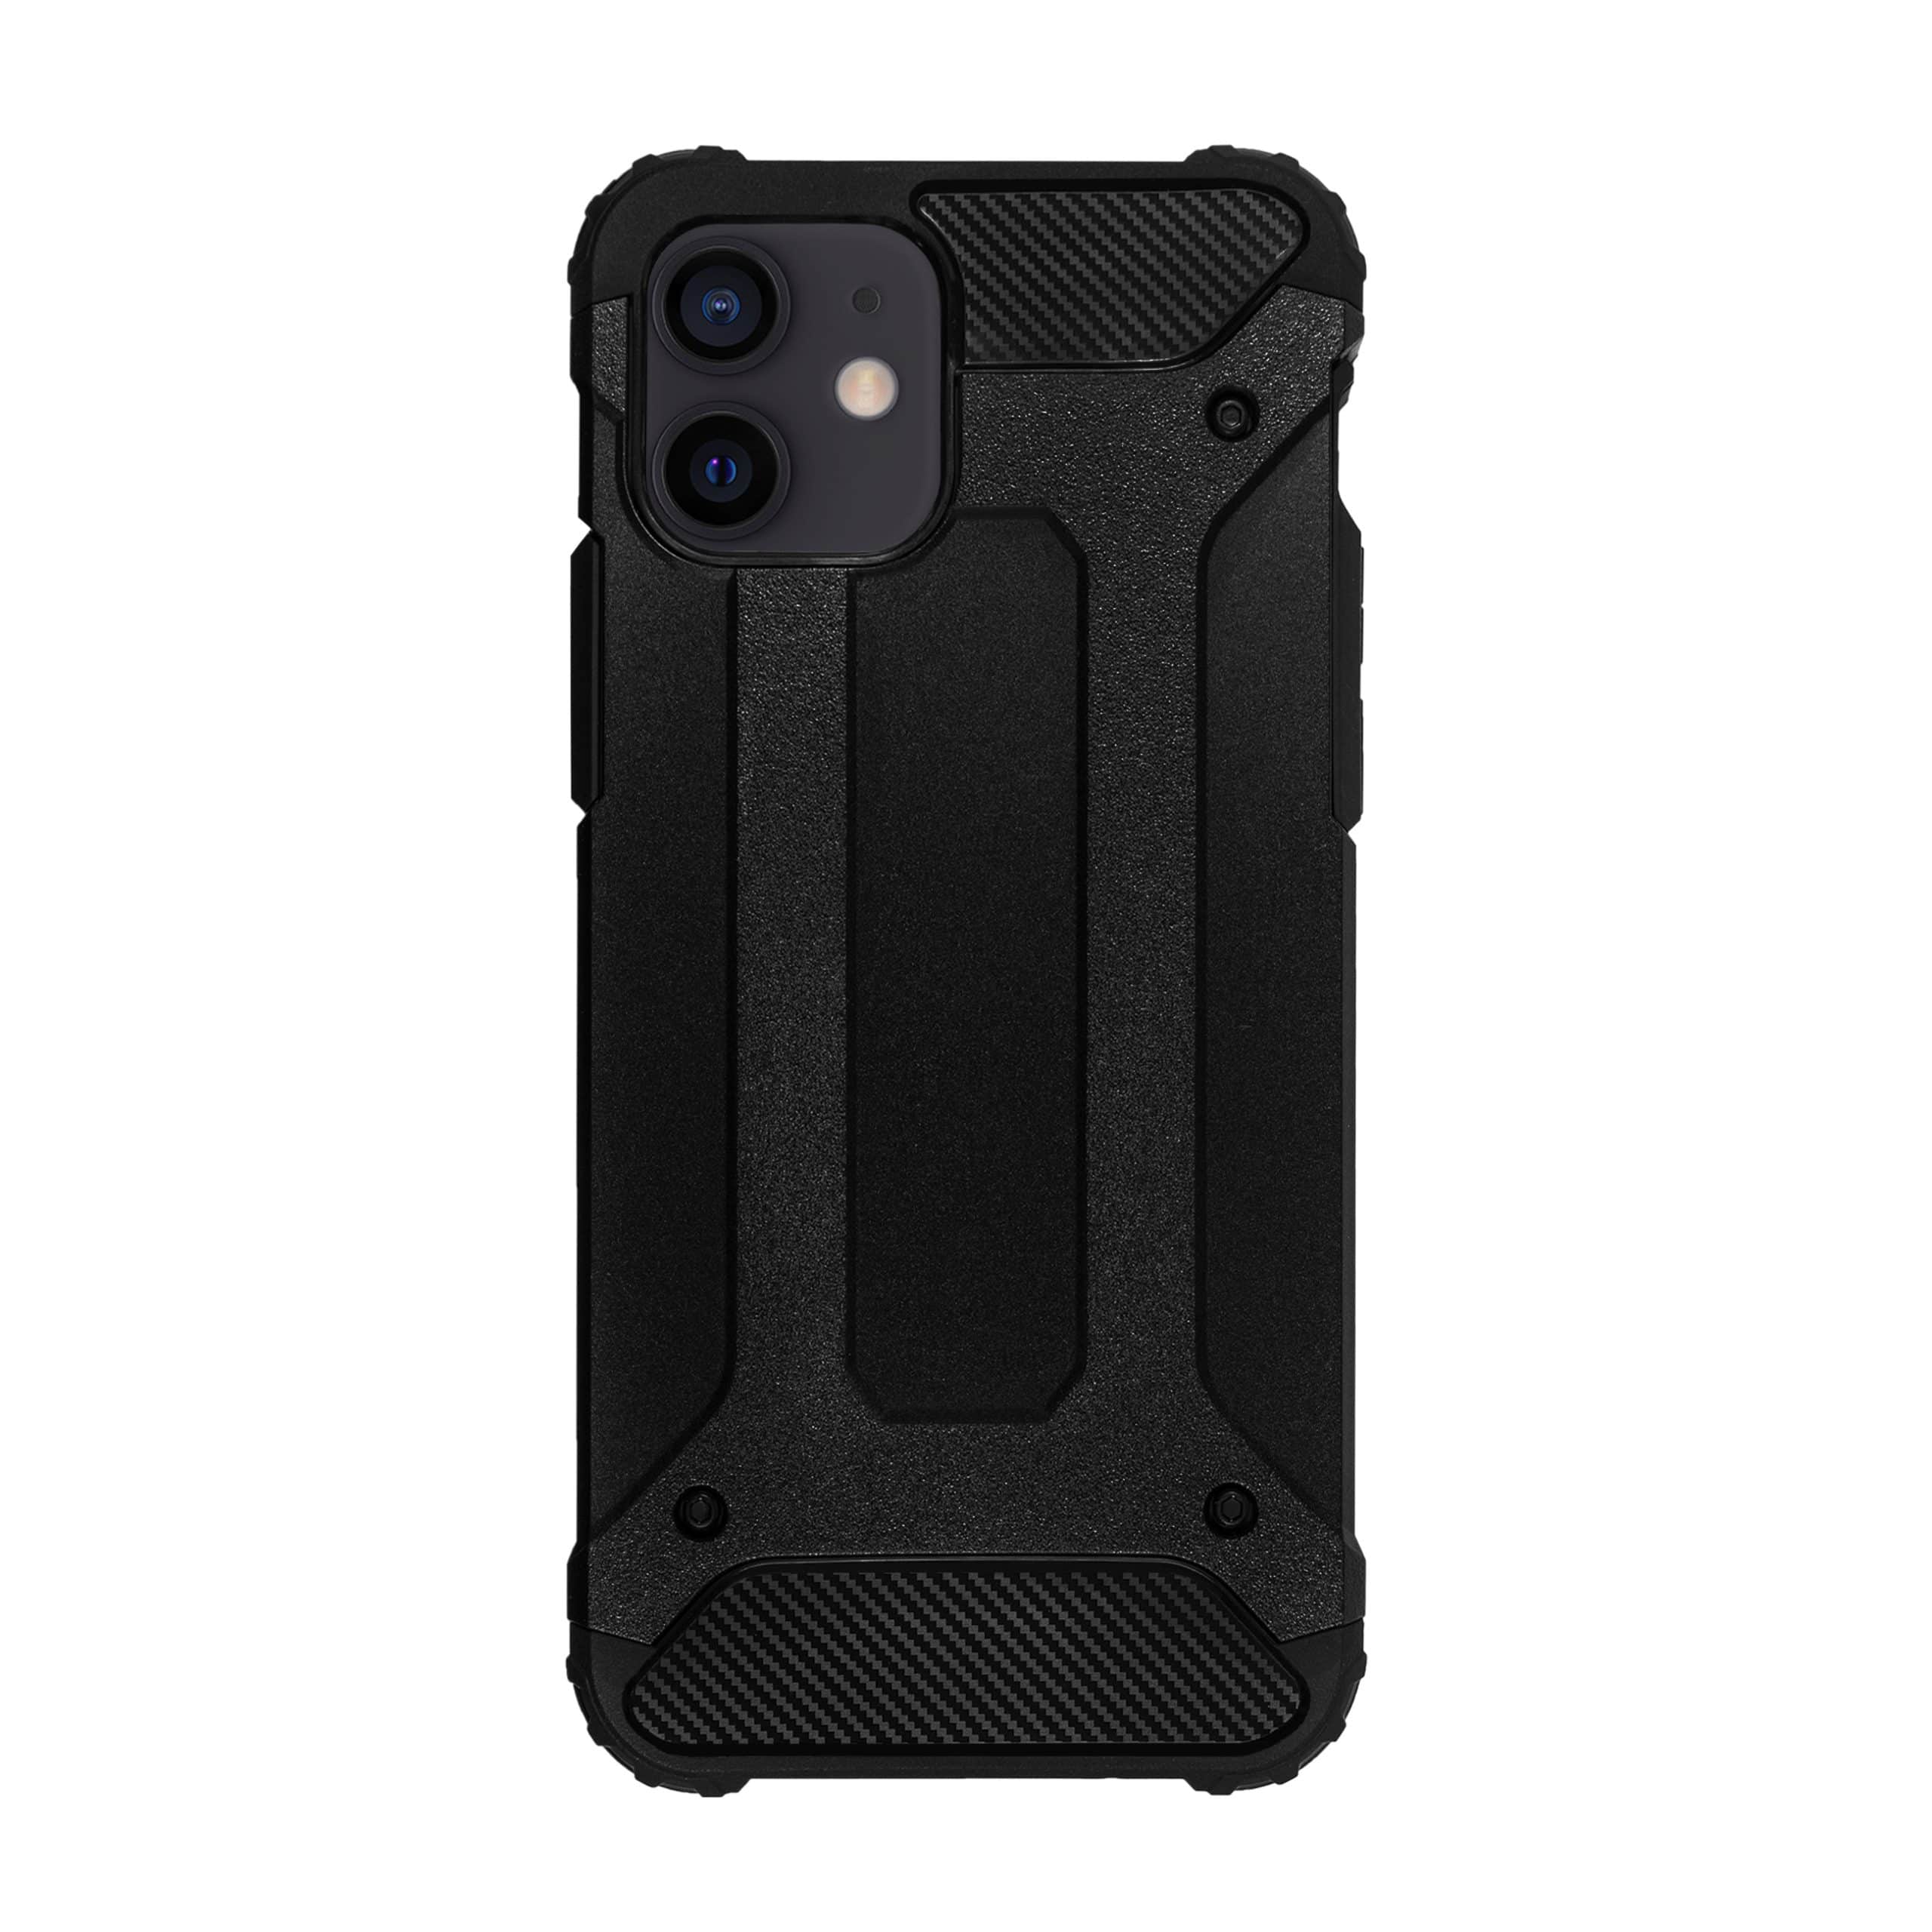 iPhone 12 Armor case zwart